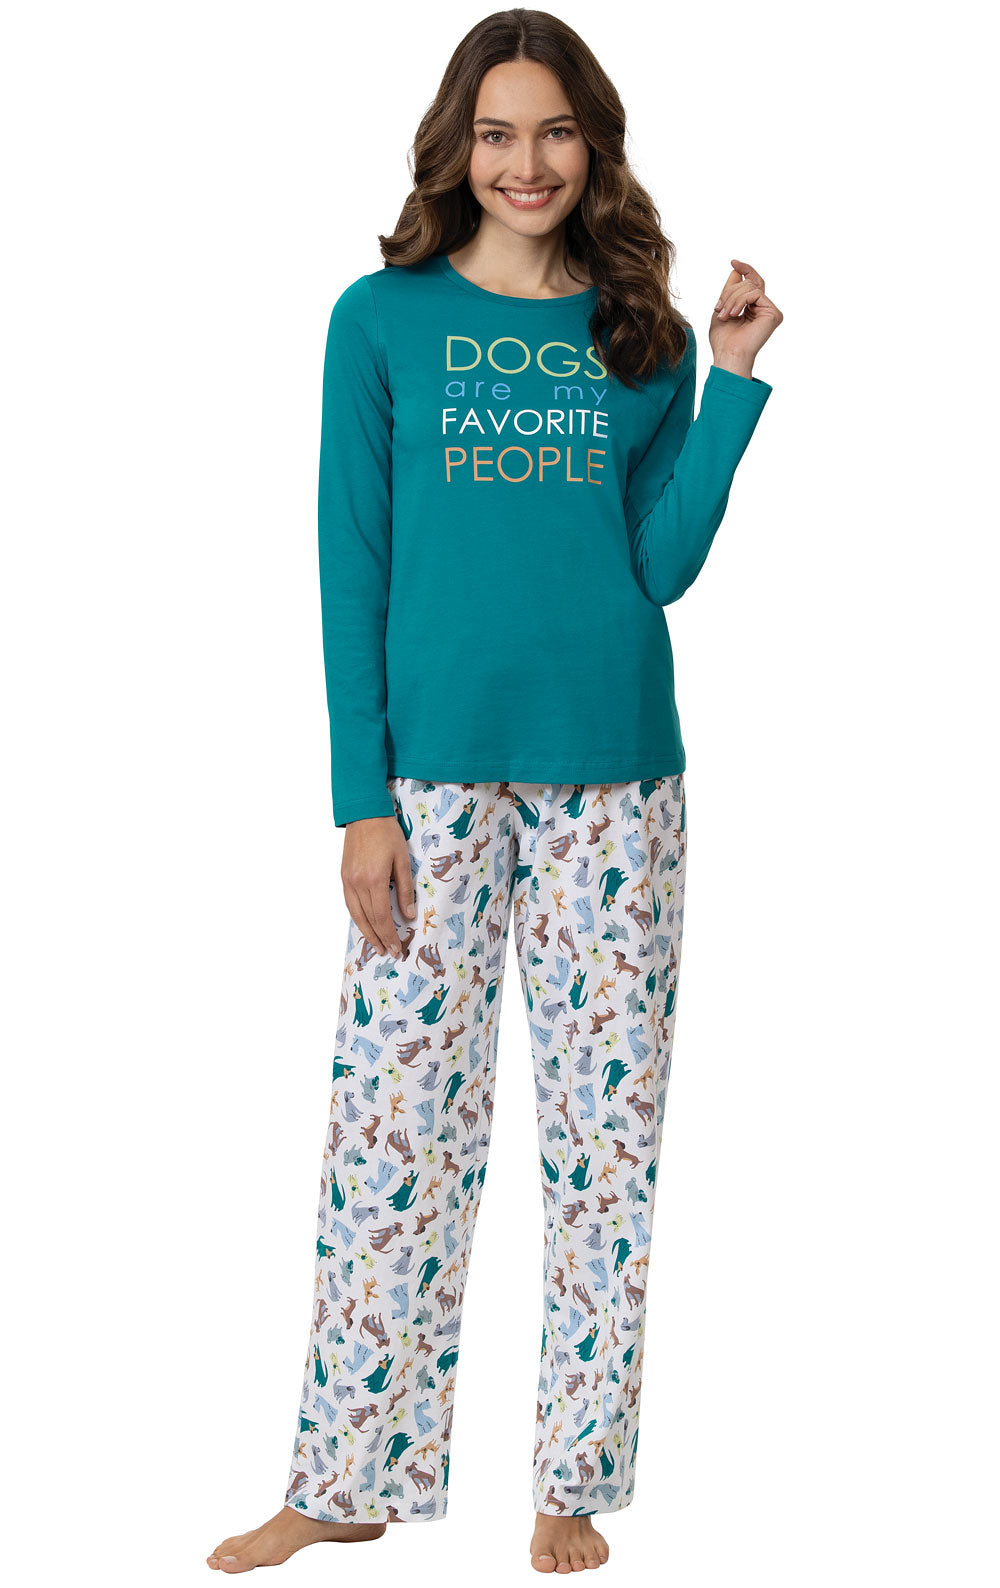 "Dogs Are My Favorite" Pajamas